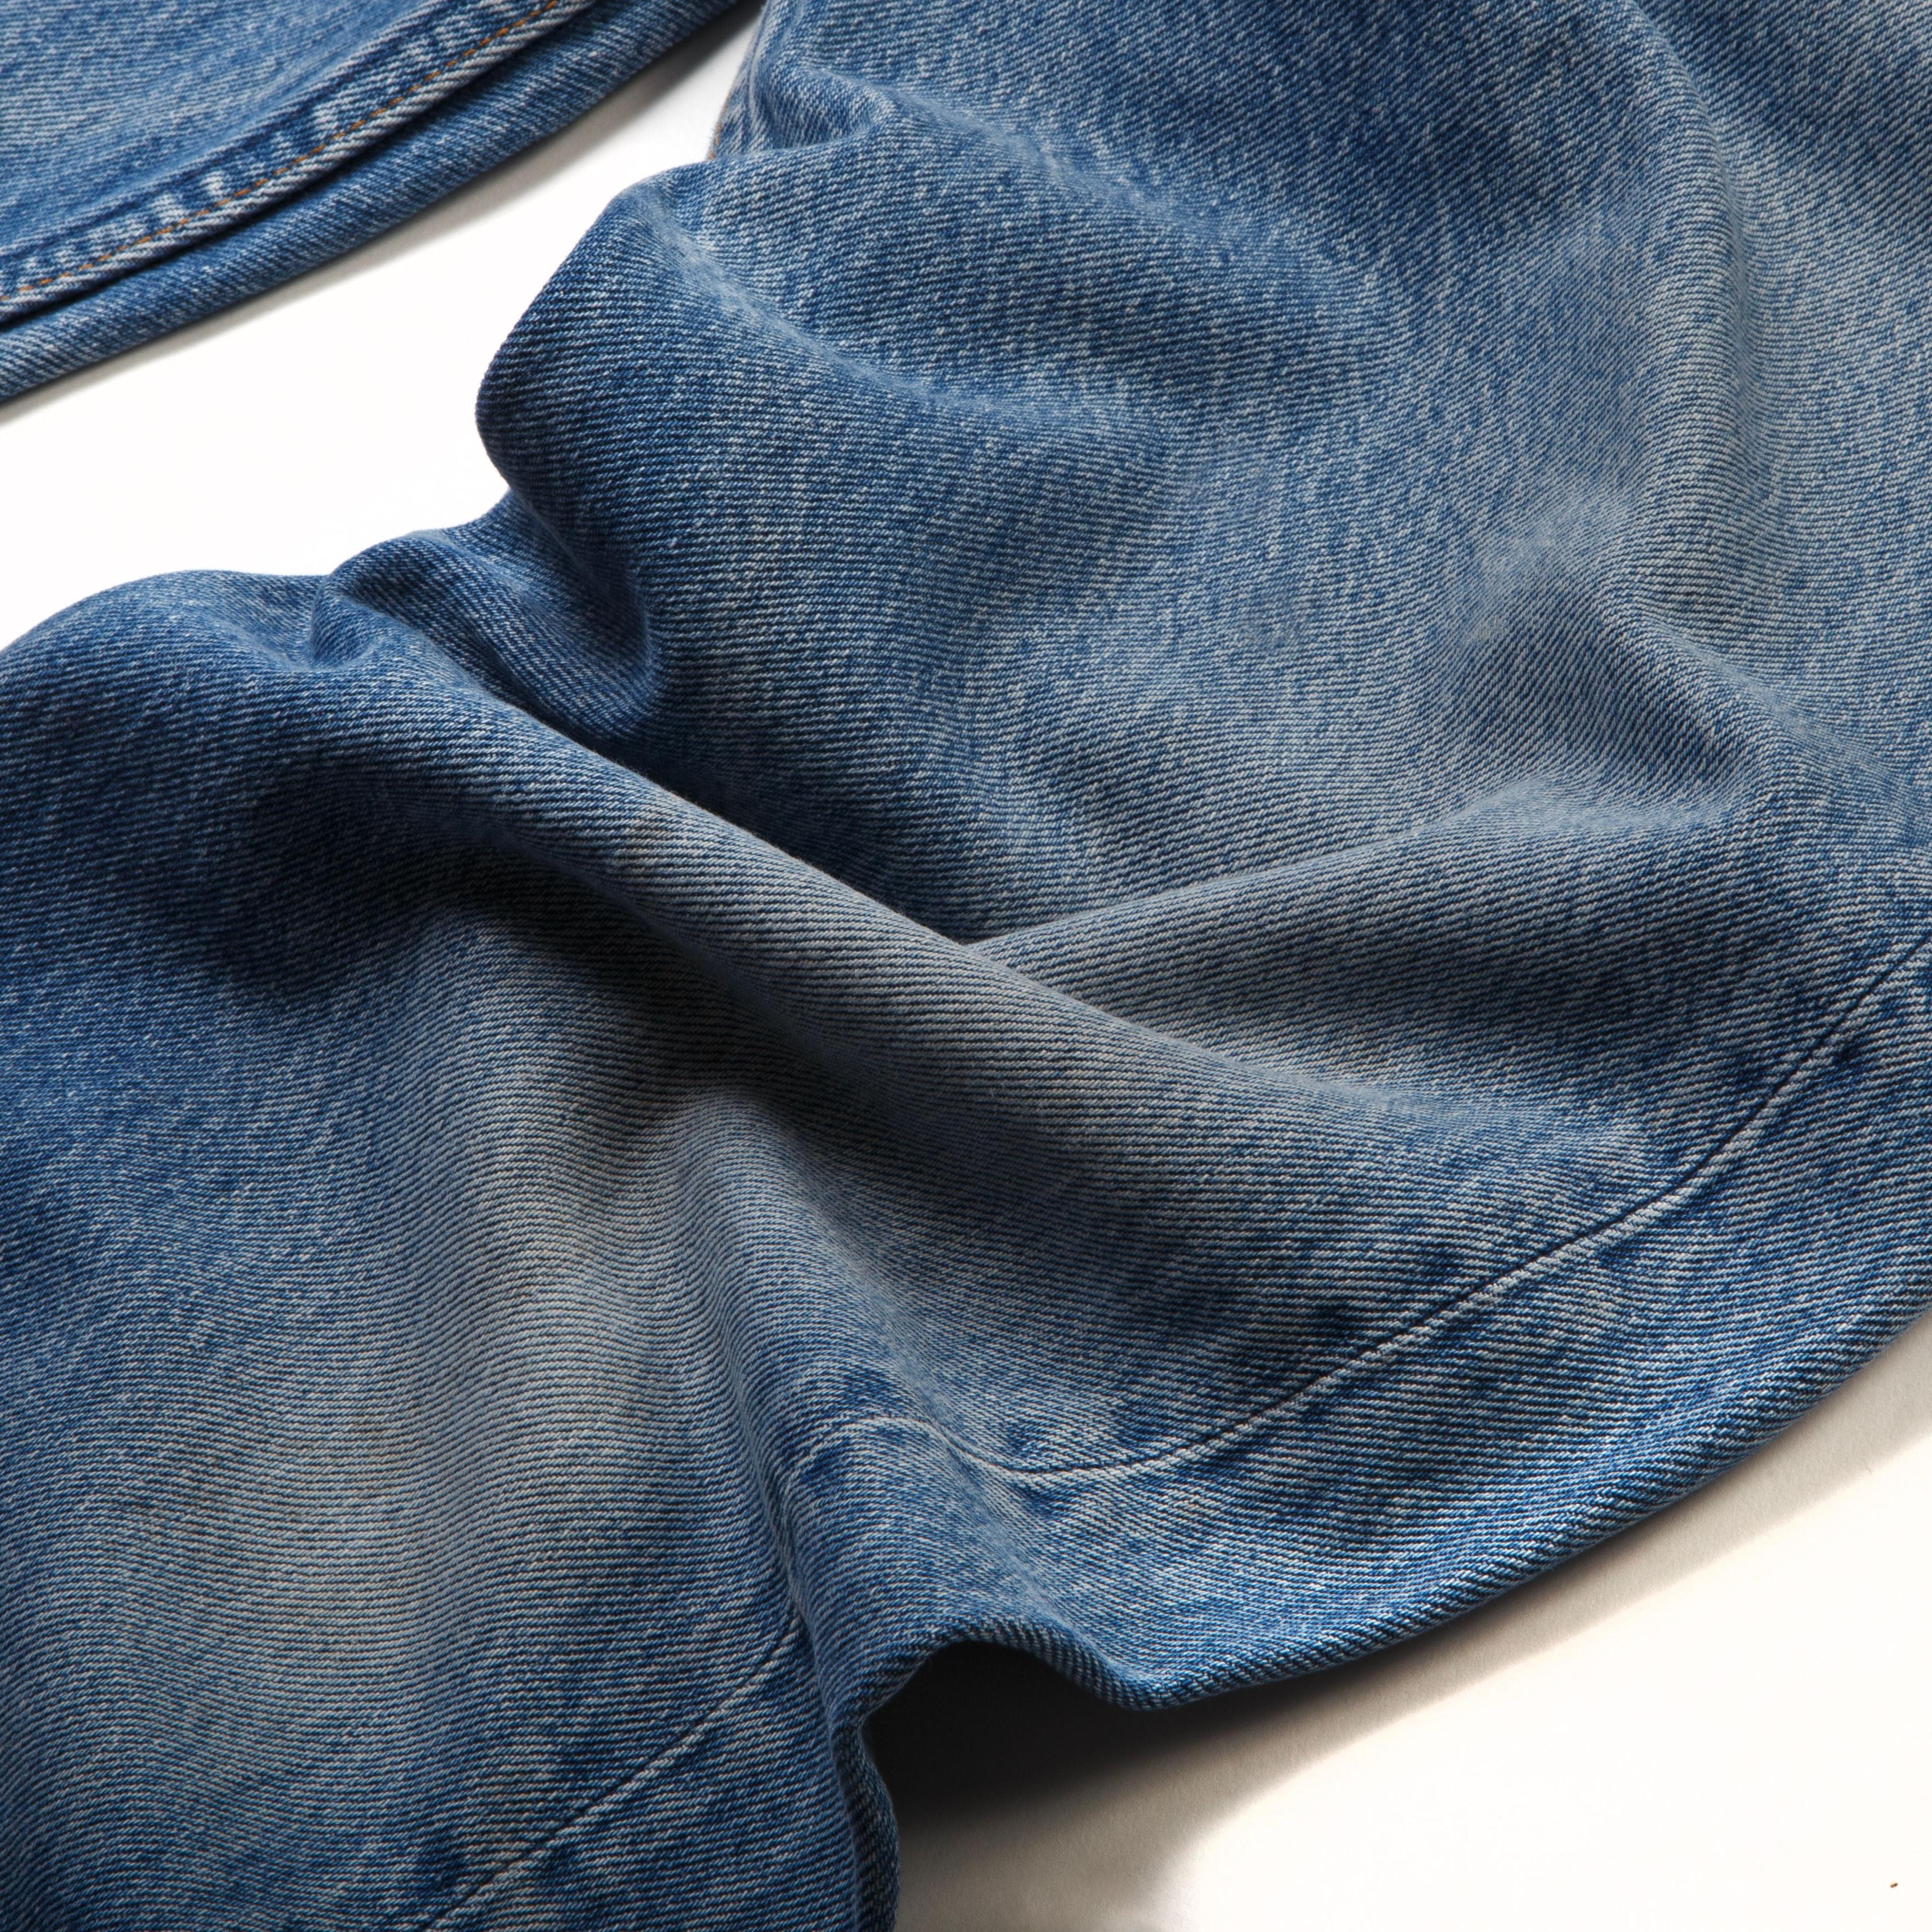 Alternate View 2 of Gallery Dept. Rework 501 Jeans Indigo Medium Wash